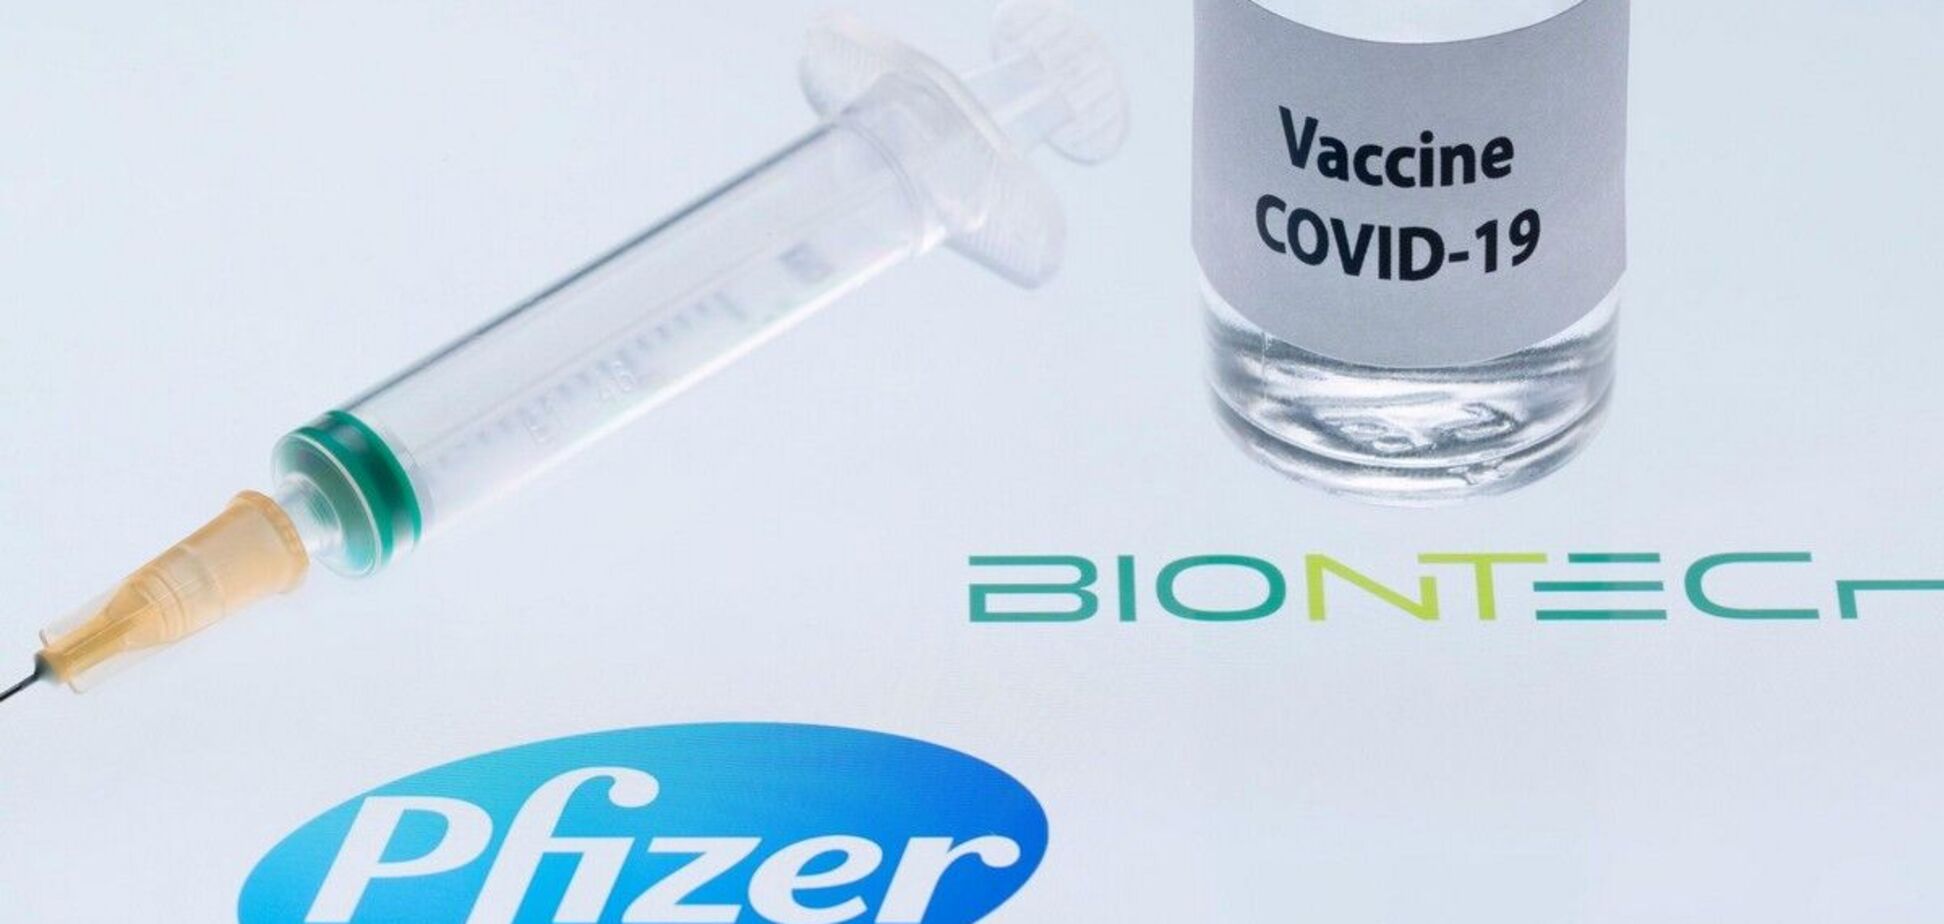 Членам наблюдательного совета ЕКУ предложили вакцинироваться Pfizer за 1500 евро. Текст SMS